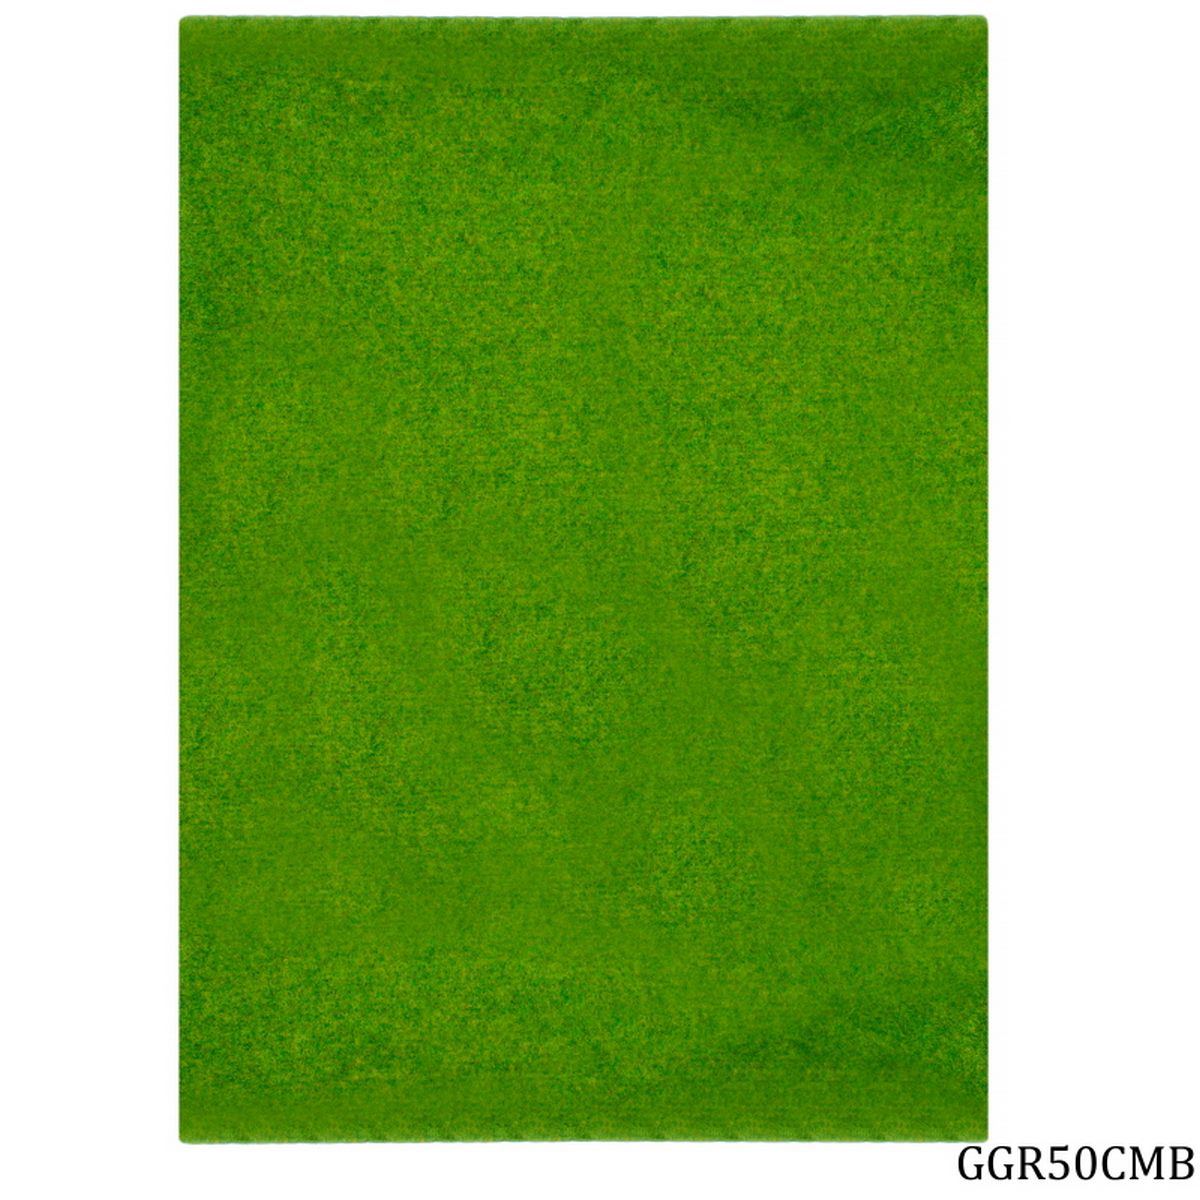 jags-mumbai Artificial Grass Garden Grass Roll 50CM X 250CM Light Green